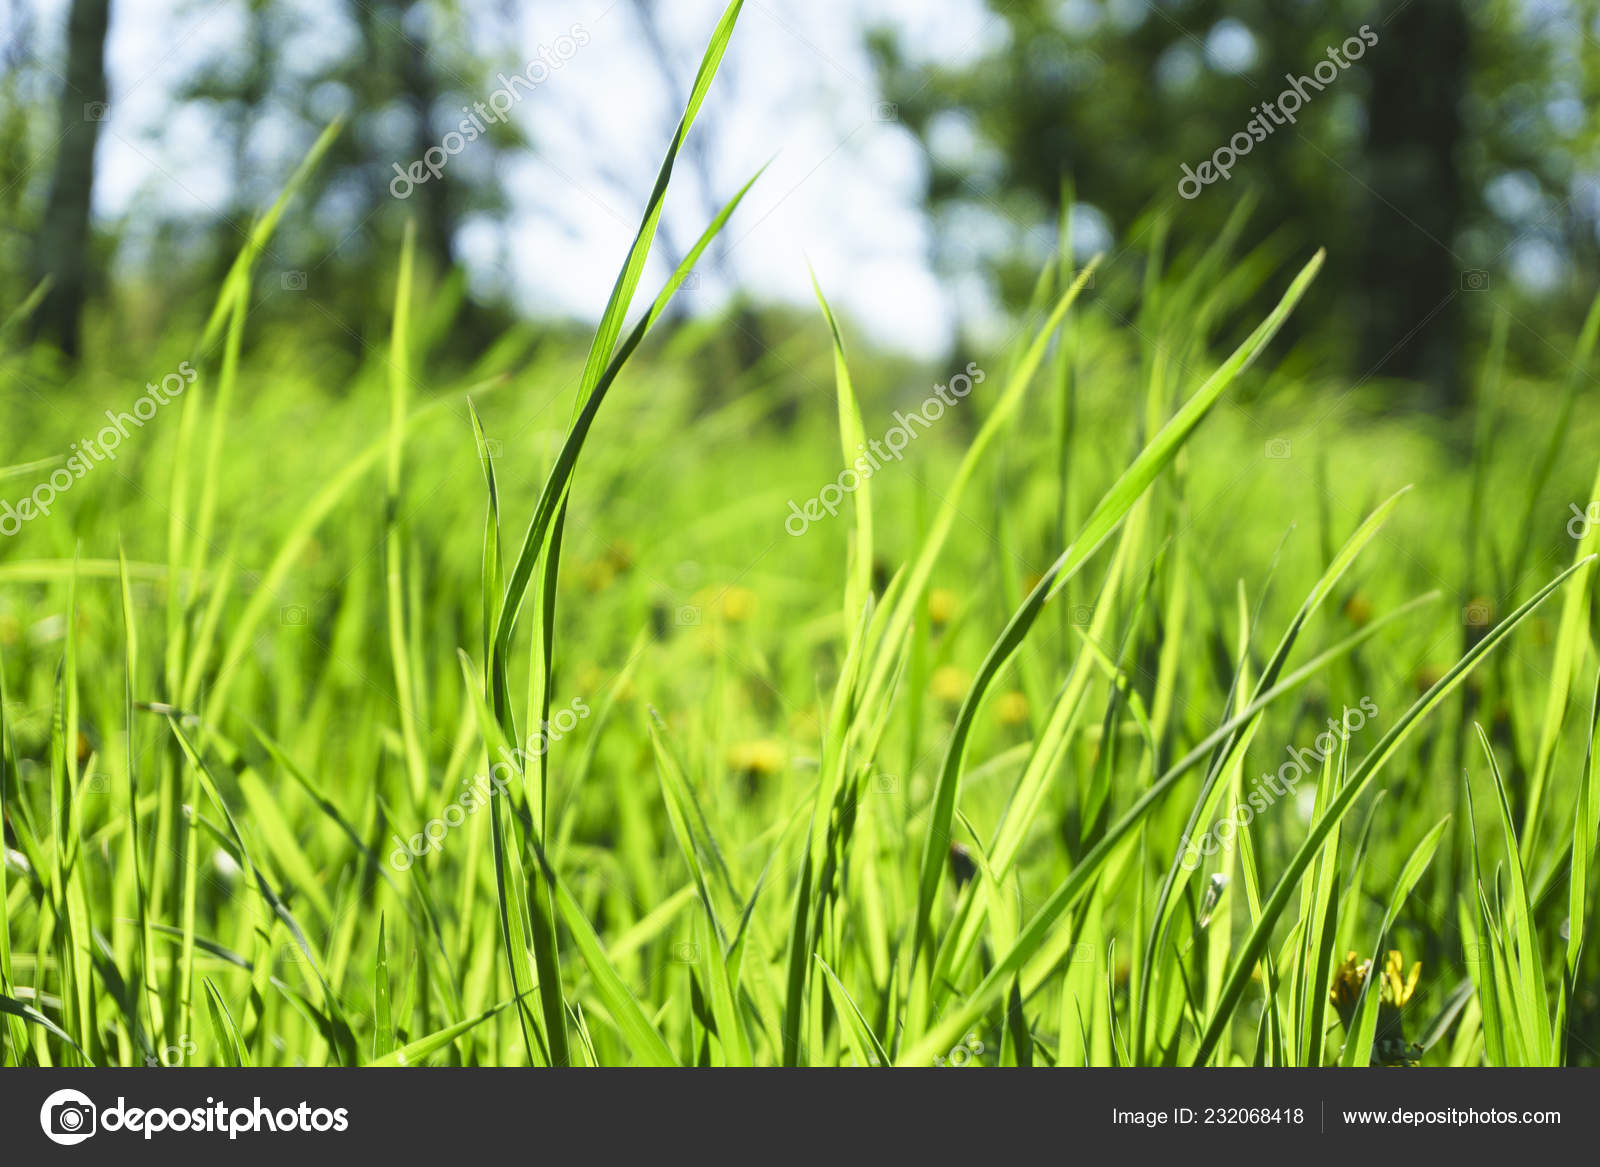 緑の草の天然ハーブの背景のテクスチャ ボケ味の美しさと芝生の庭 ストック写真 C Sanek